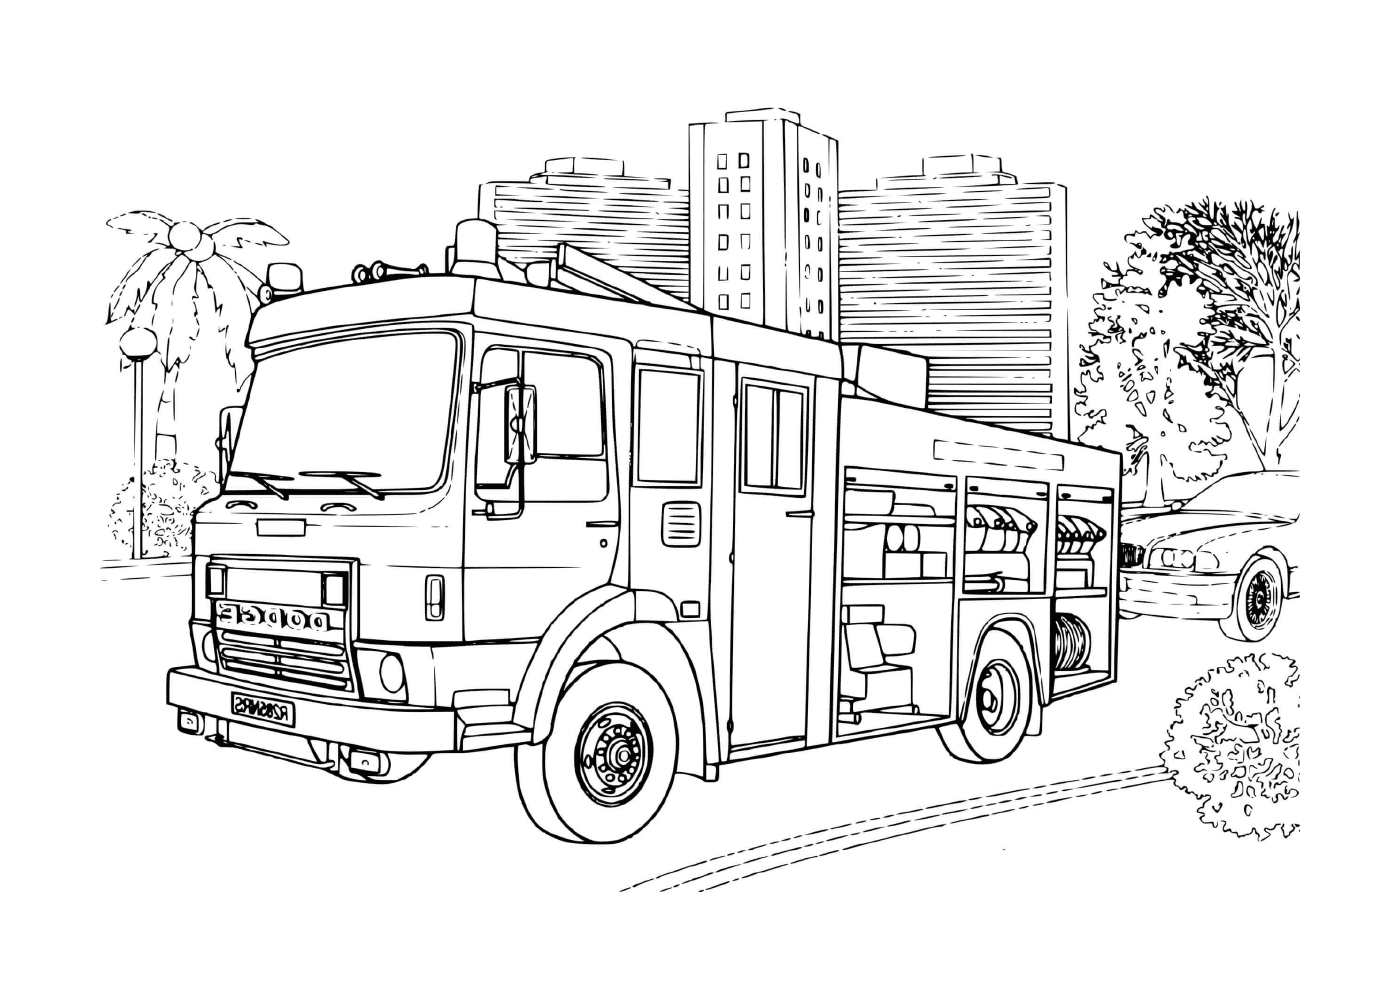  a Dodge brand fire truck 